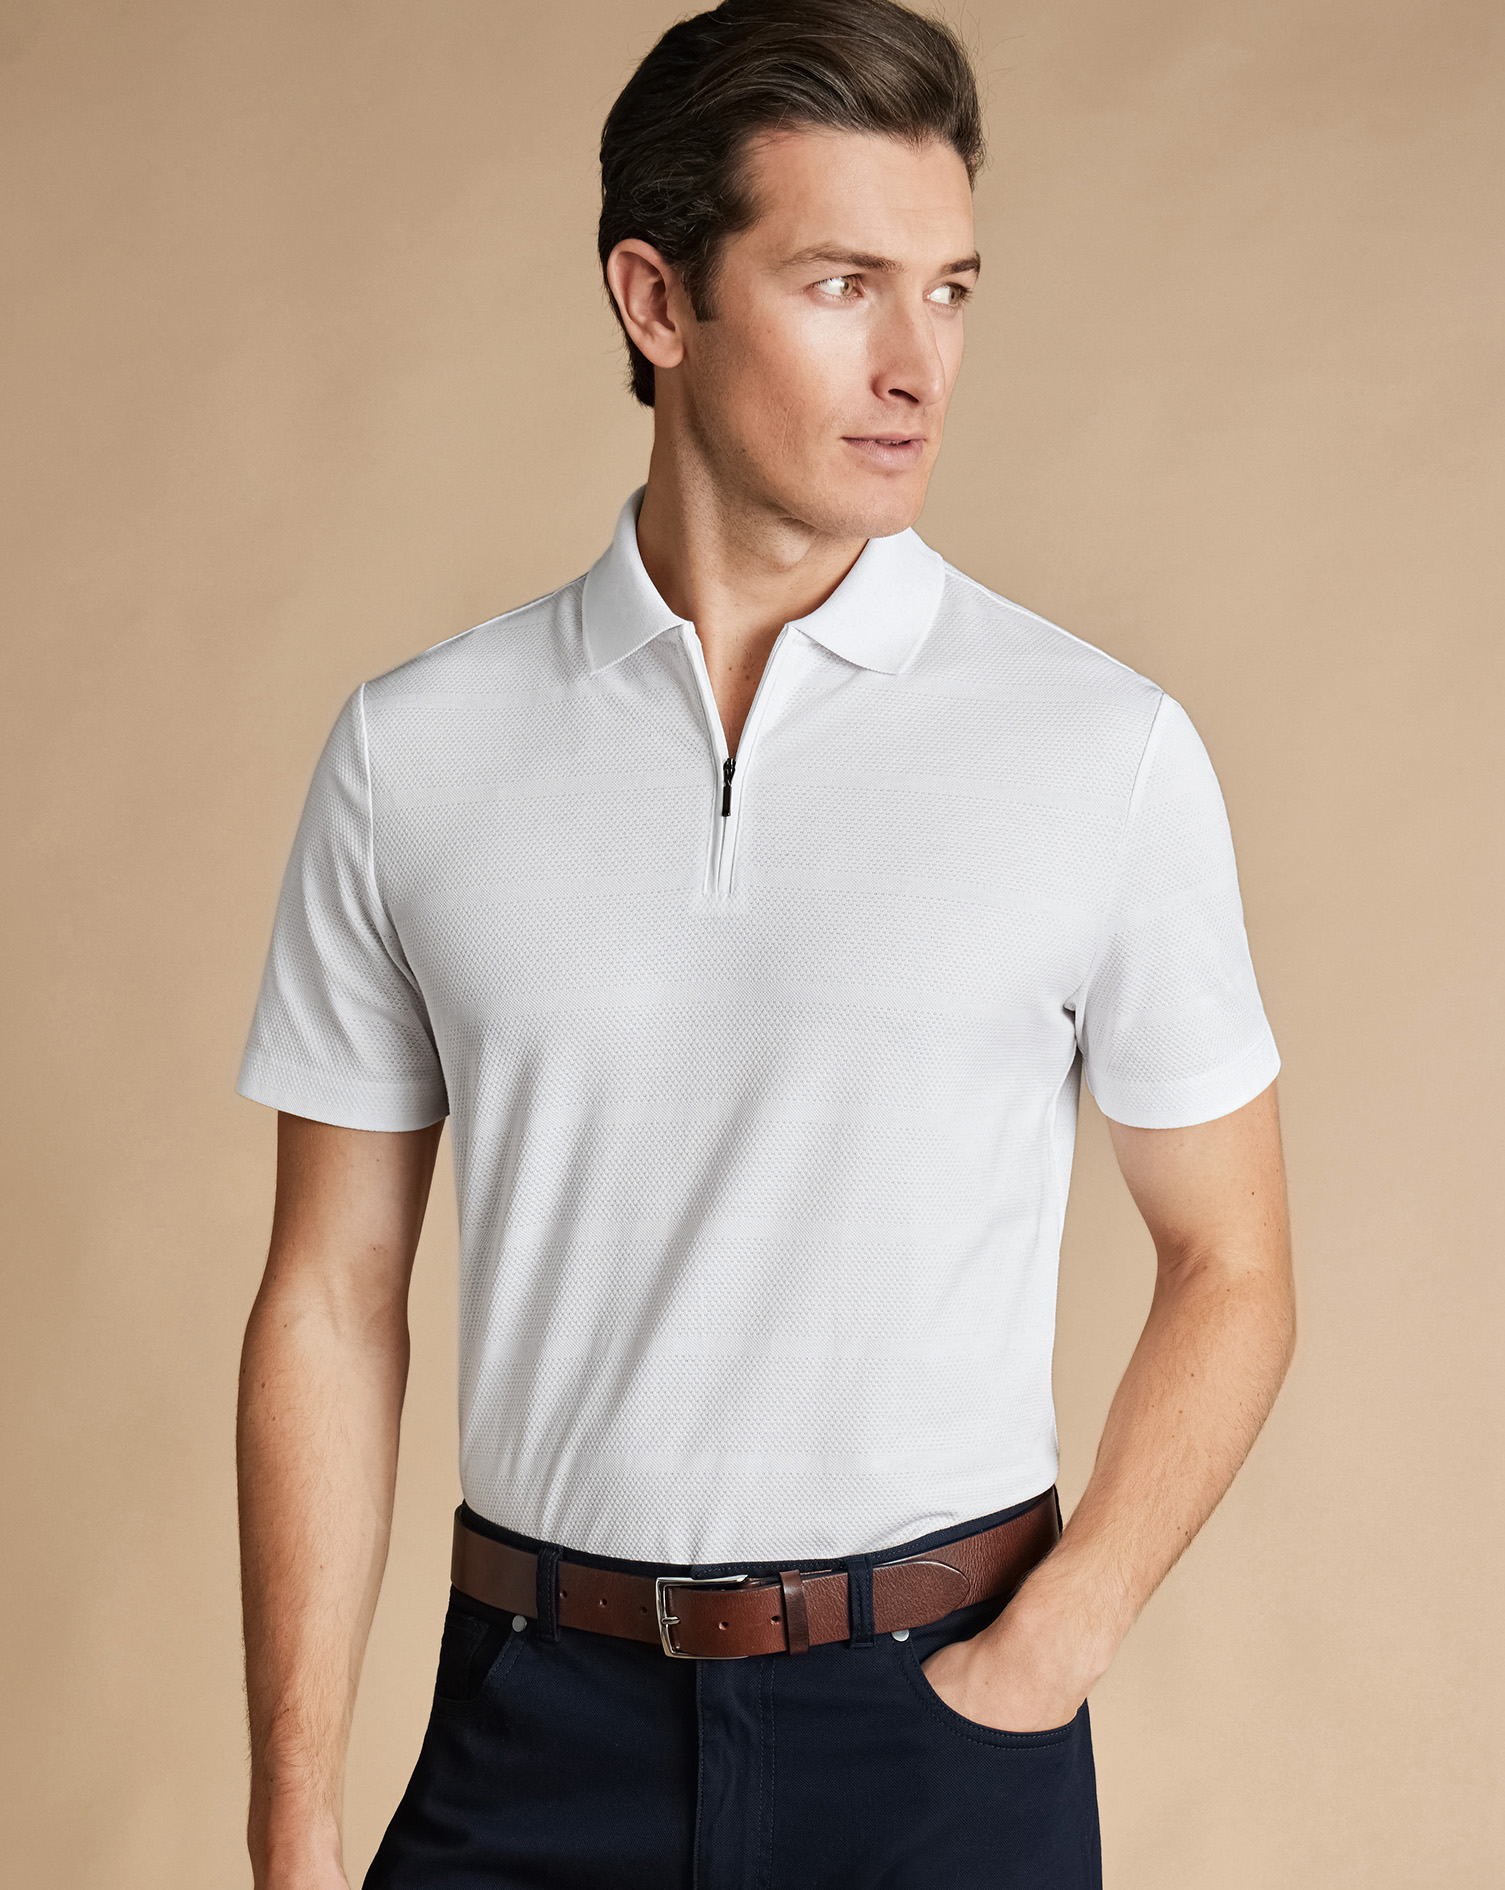 Men's Charles Tyrwhitt Popcorn Textured Tyrwhitt Cool Zip-Neck Stripe Polo Shirt - White Size XS Cot